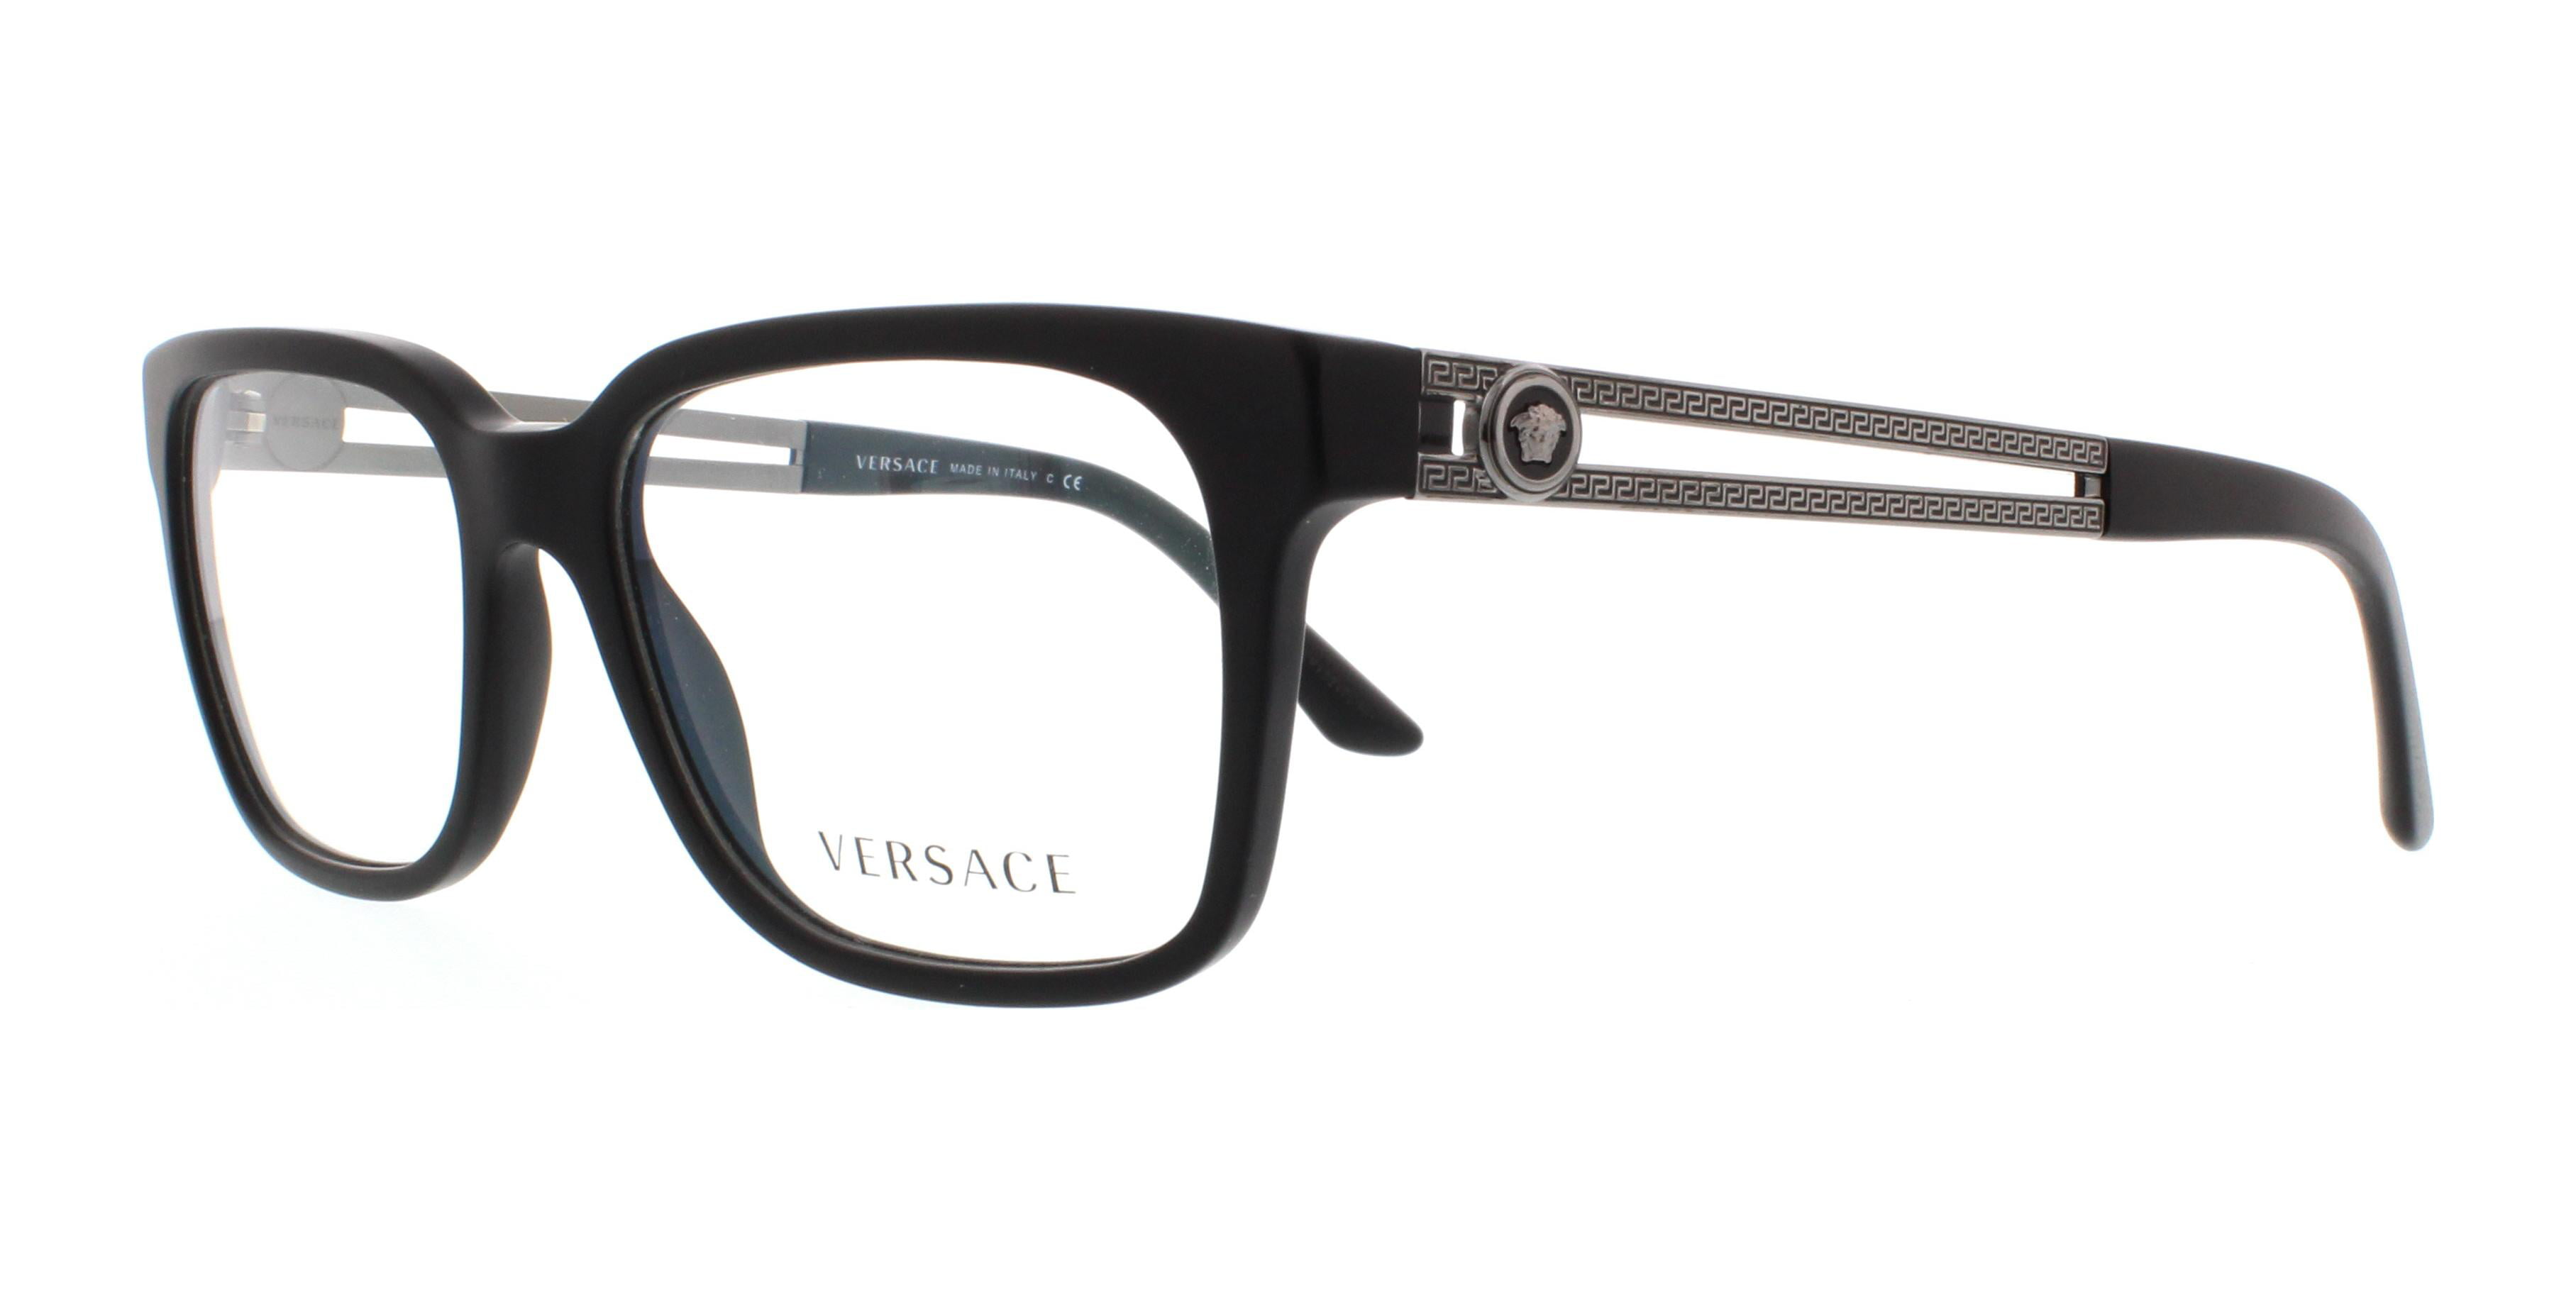 versace eyeglasses ve3218